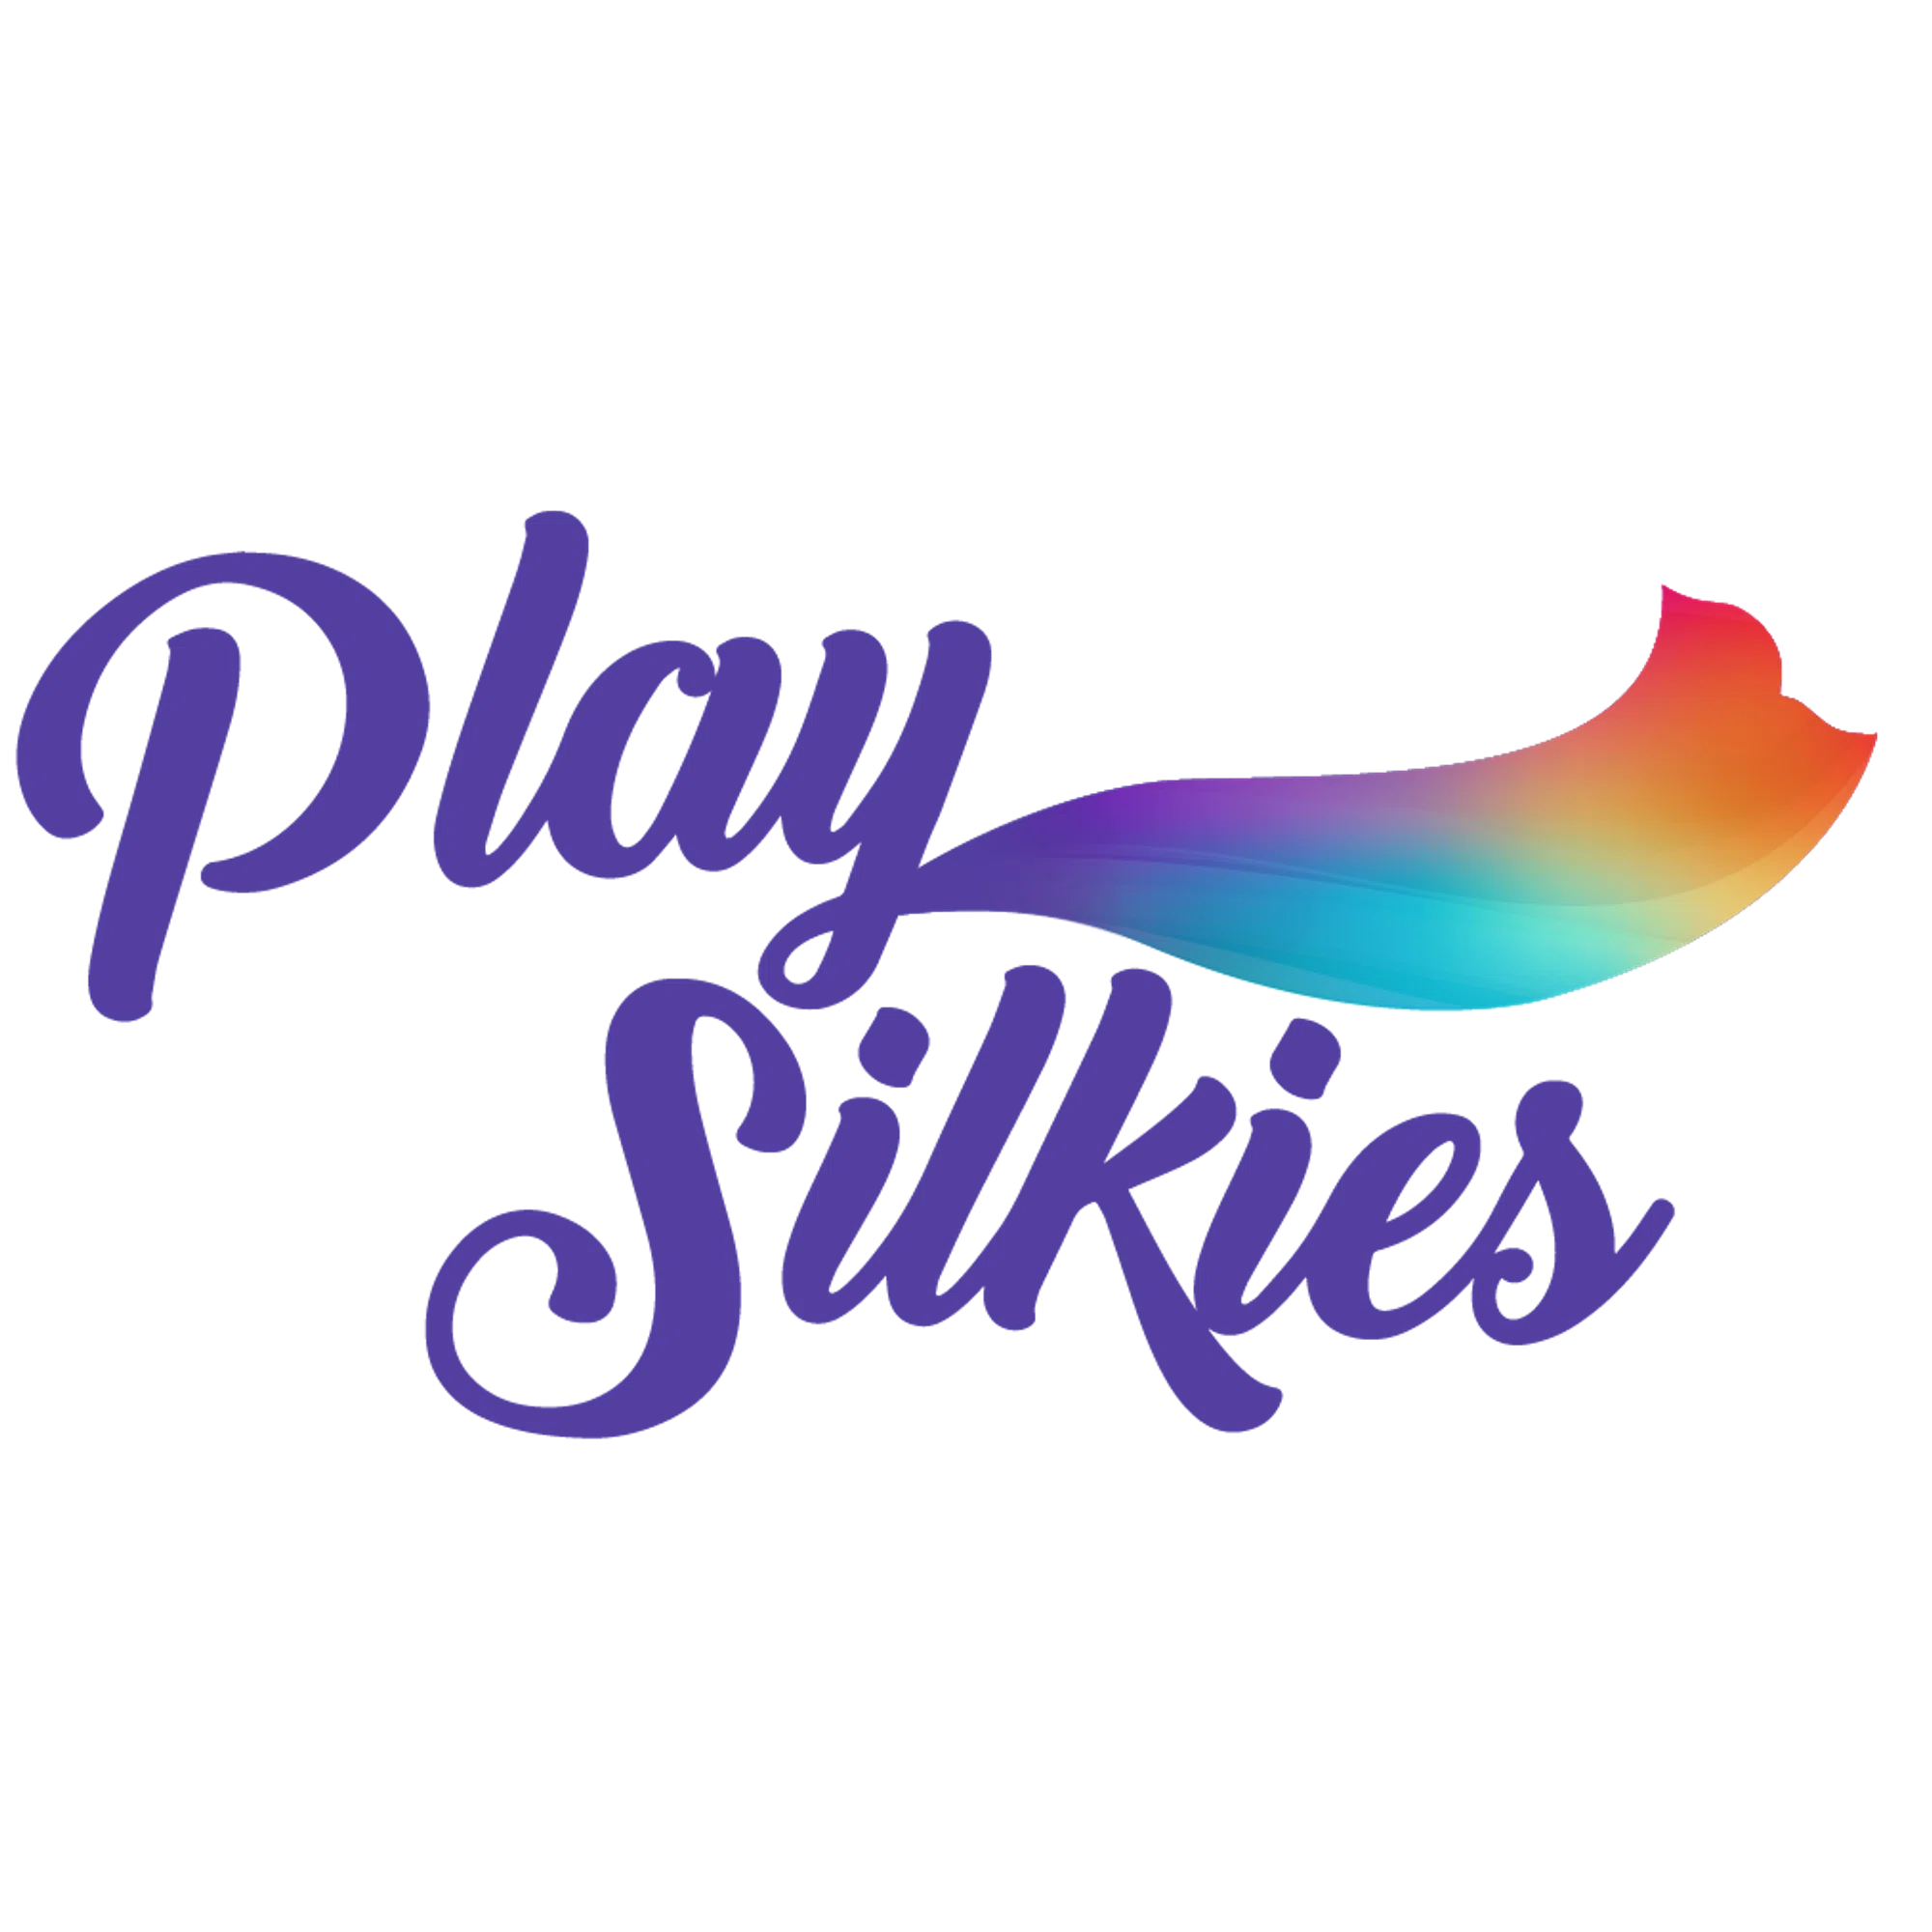 Play Silkies